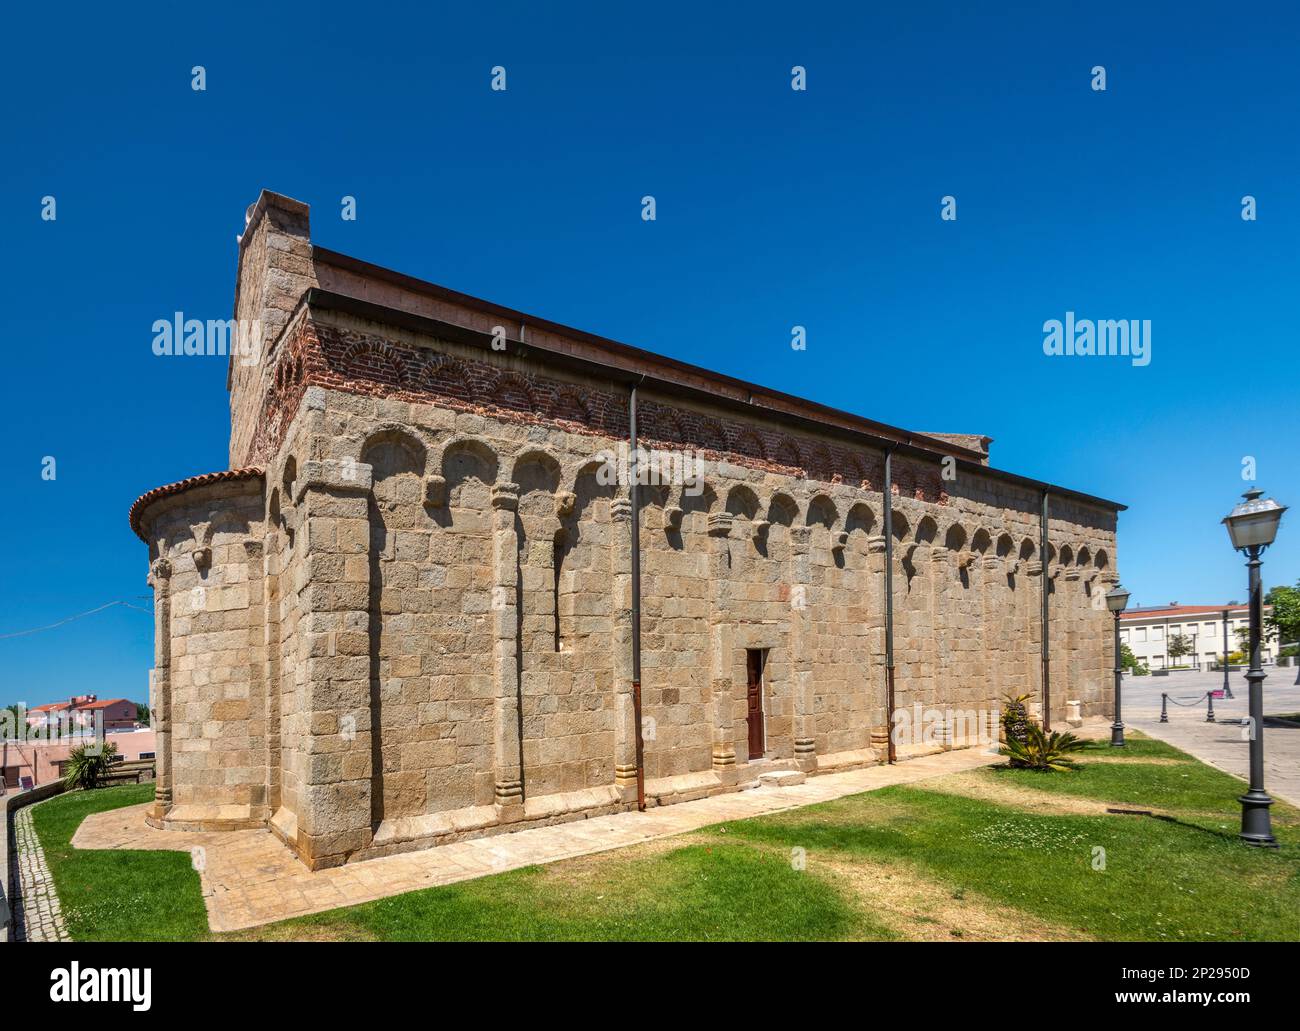 Chiesa di San Simplicio, 11-12e siècle, style religieuse pisane, ancienne cathédrale de Olbia, Gallura région, province de Sassari, Sardaigne, Italie Banque D'Images